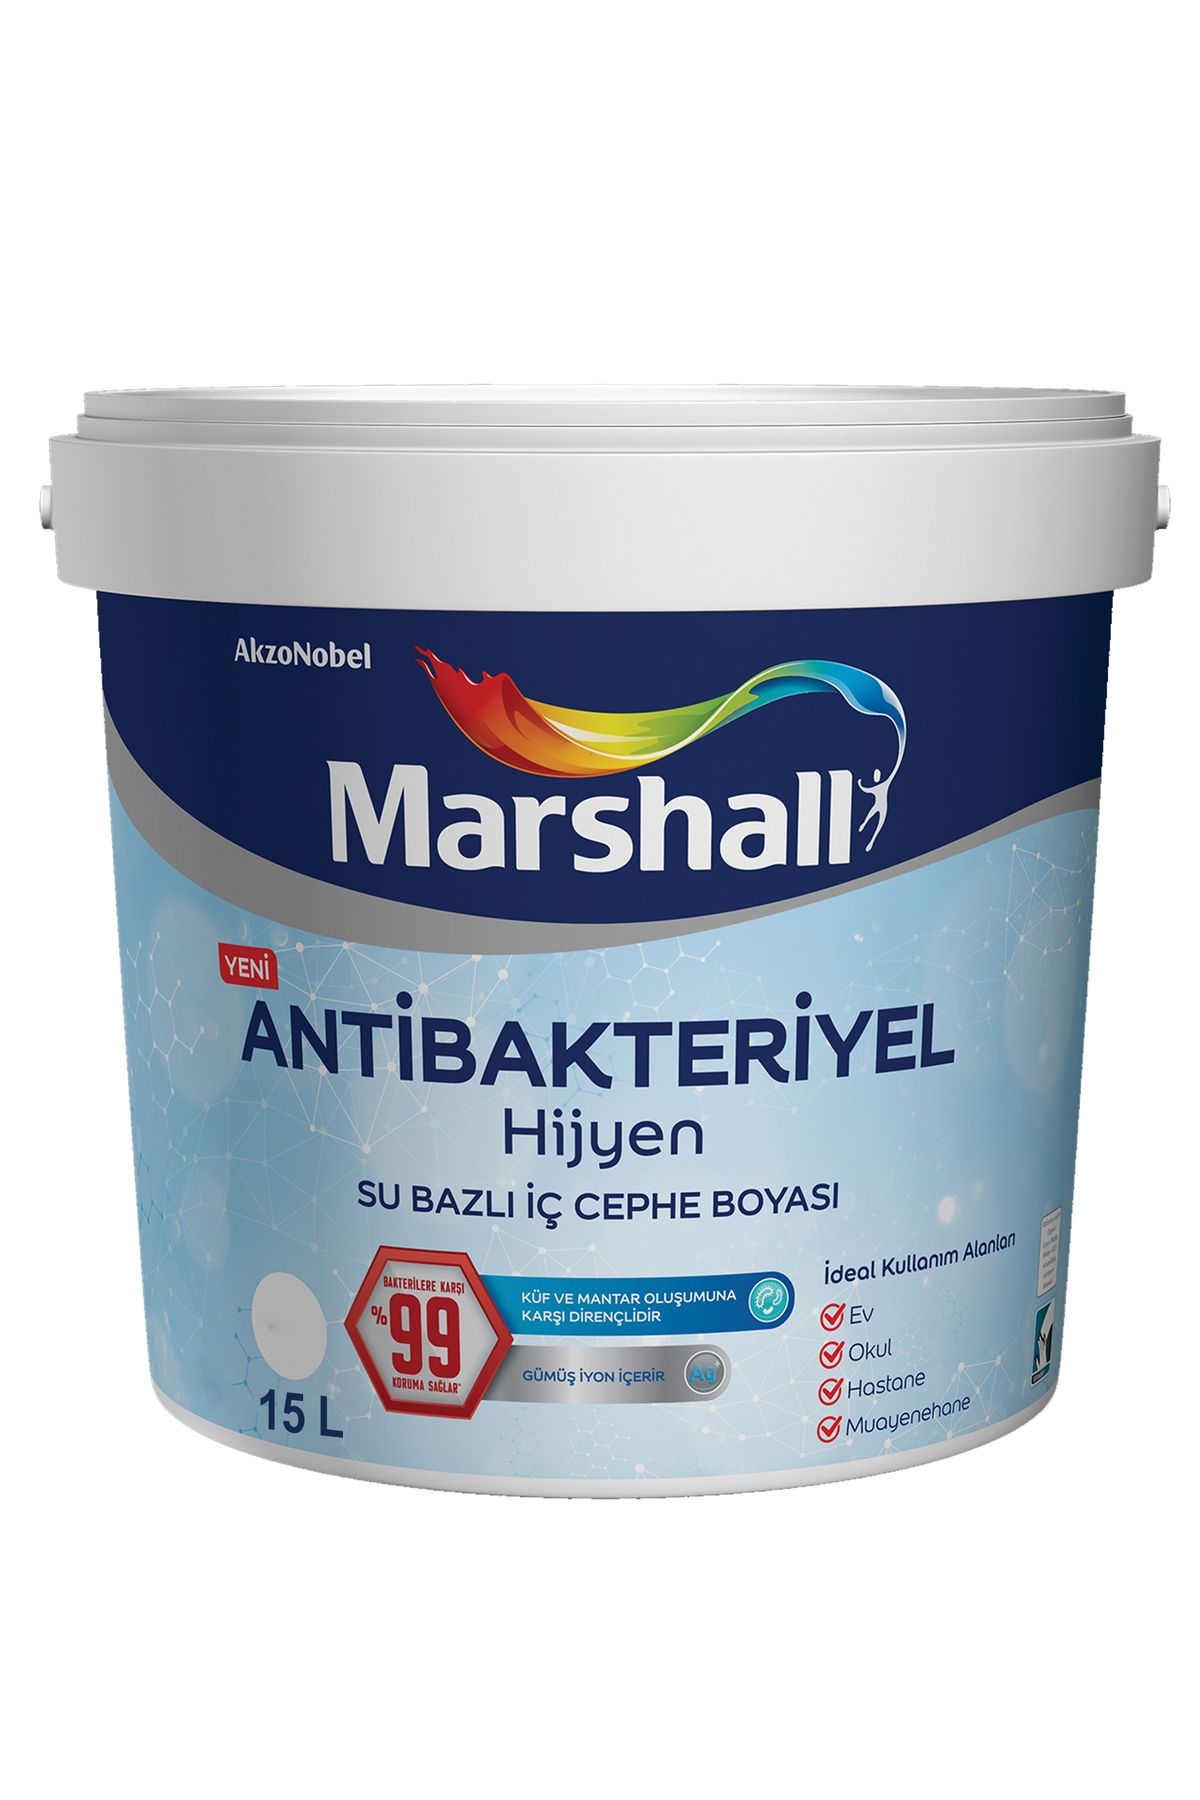 Marshall Antibakteriyel Hijyen Ipek Mat Iç Cephe Boyası Tatlı Huzur 15 Lt (20 KG)